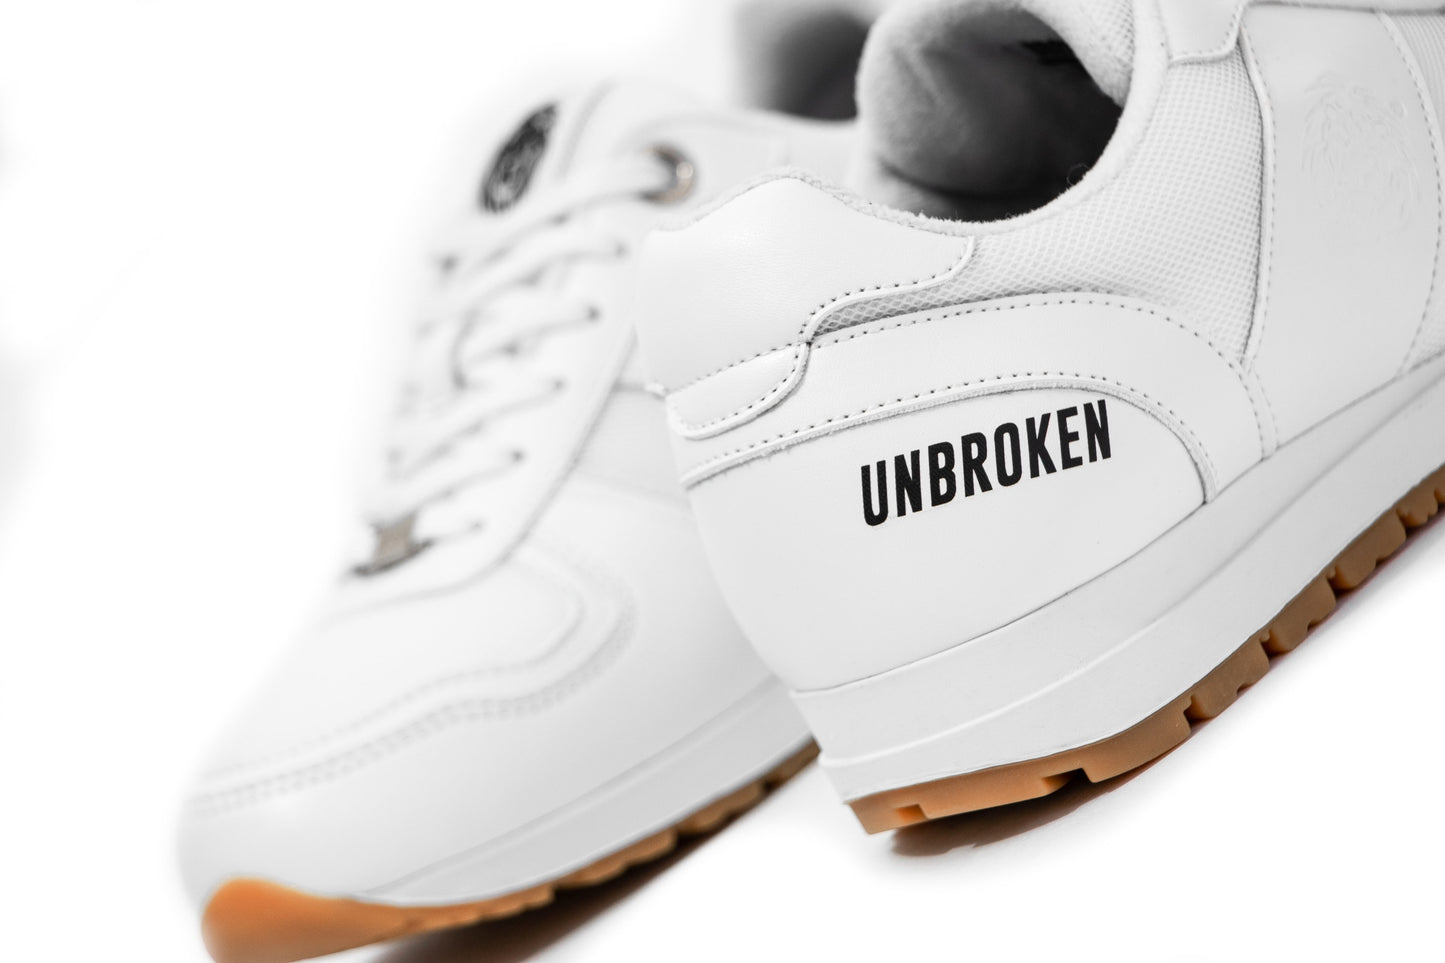 Tenis Unbroken Falcon blanco - Unbroken Sports Wear 